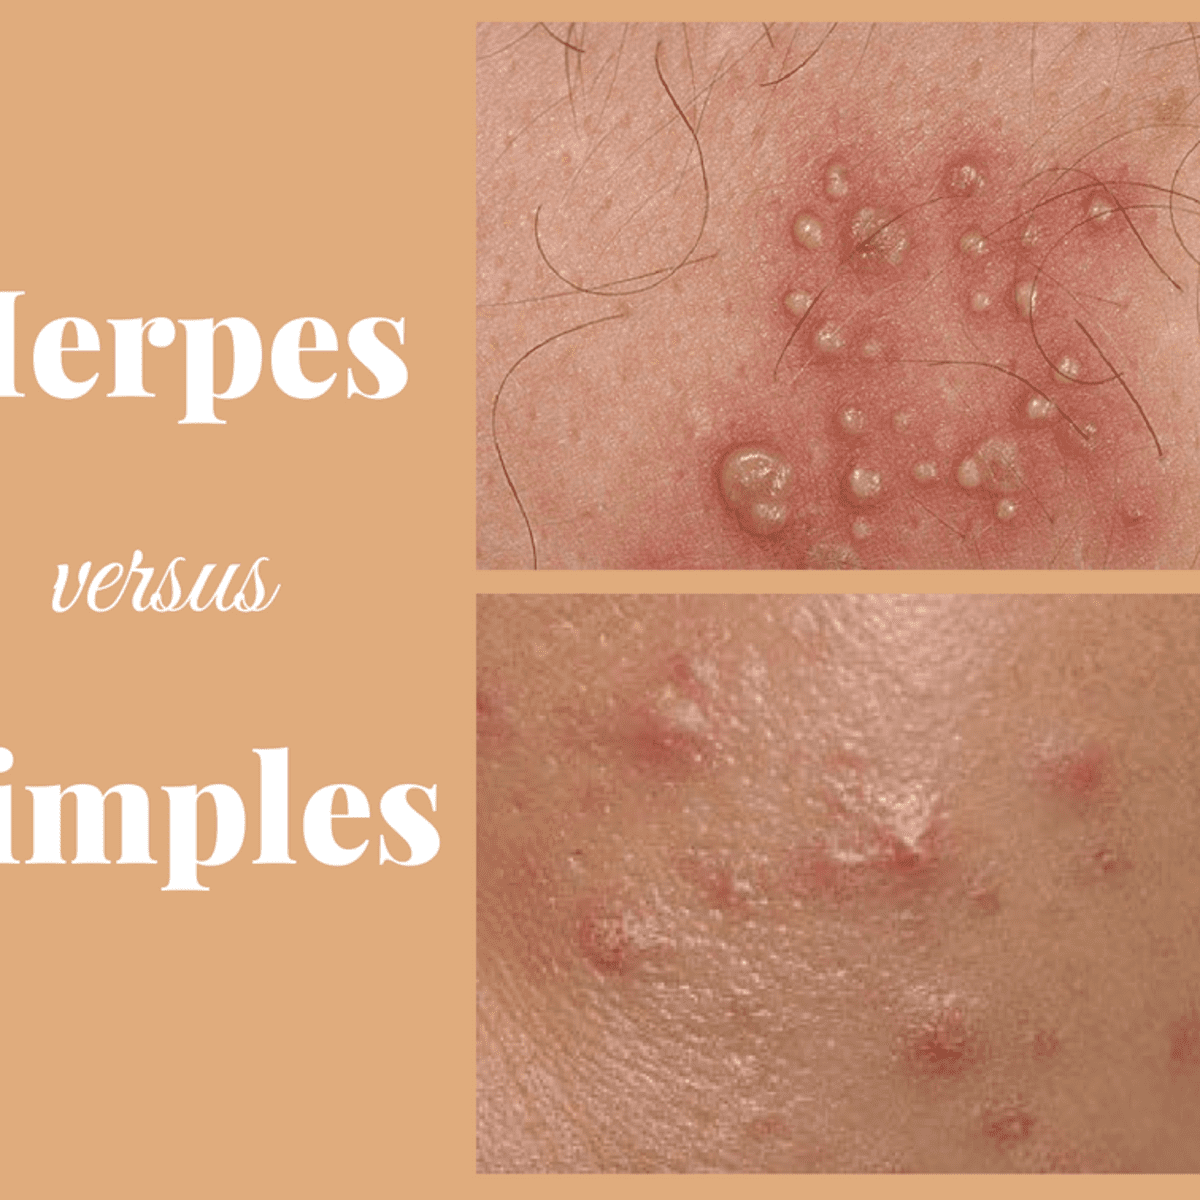 Herpes bumps vs Ingrown Hair